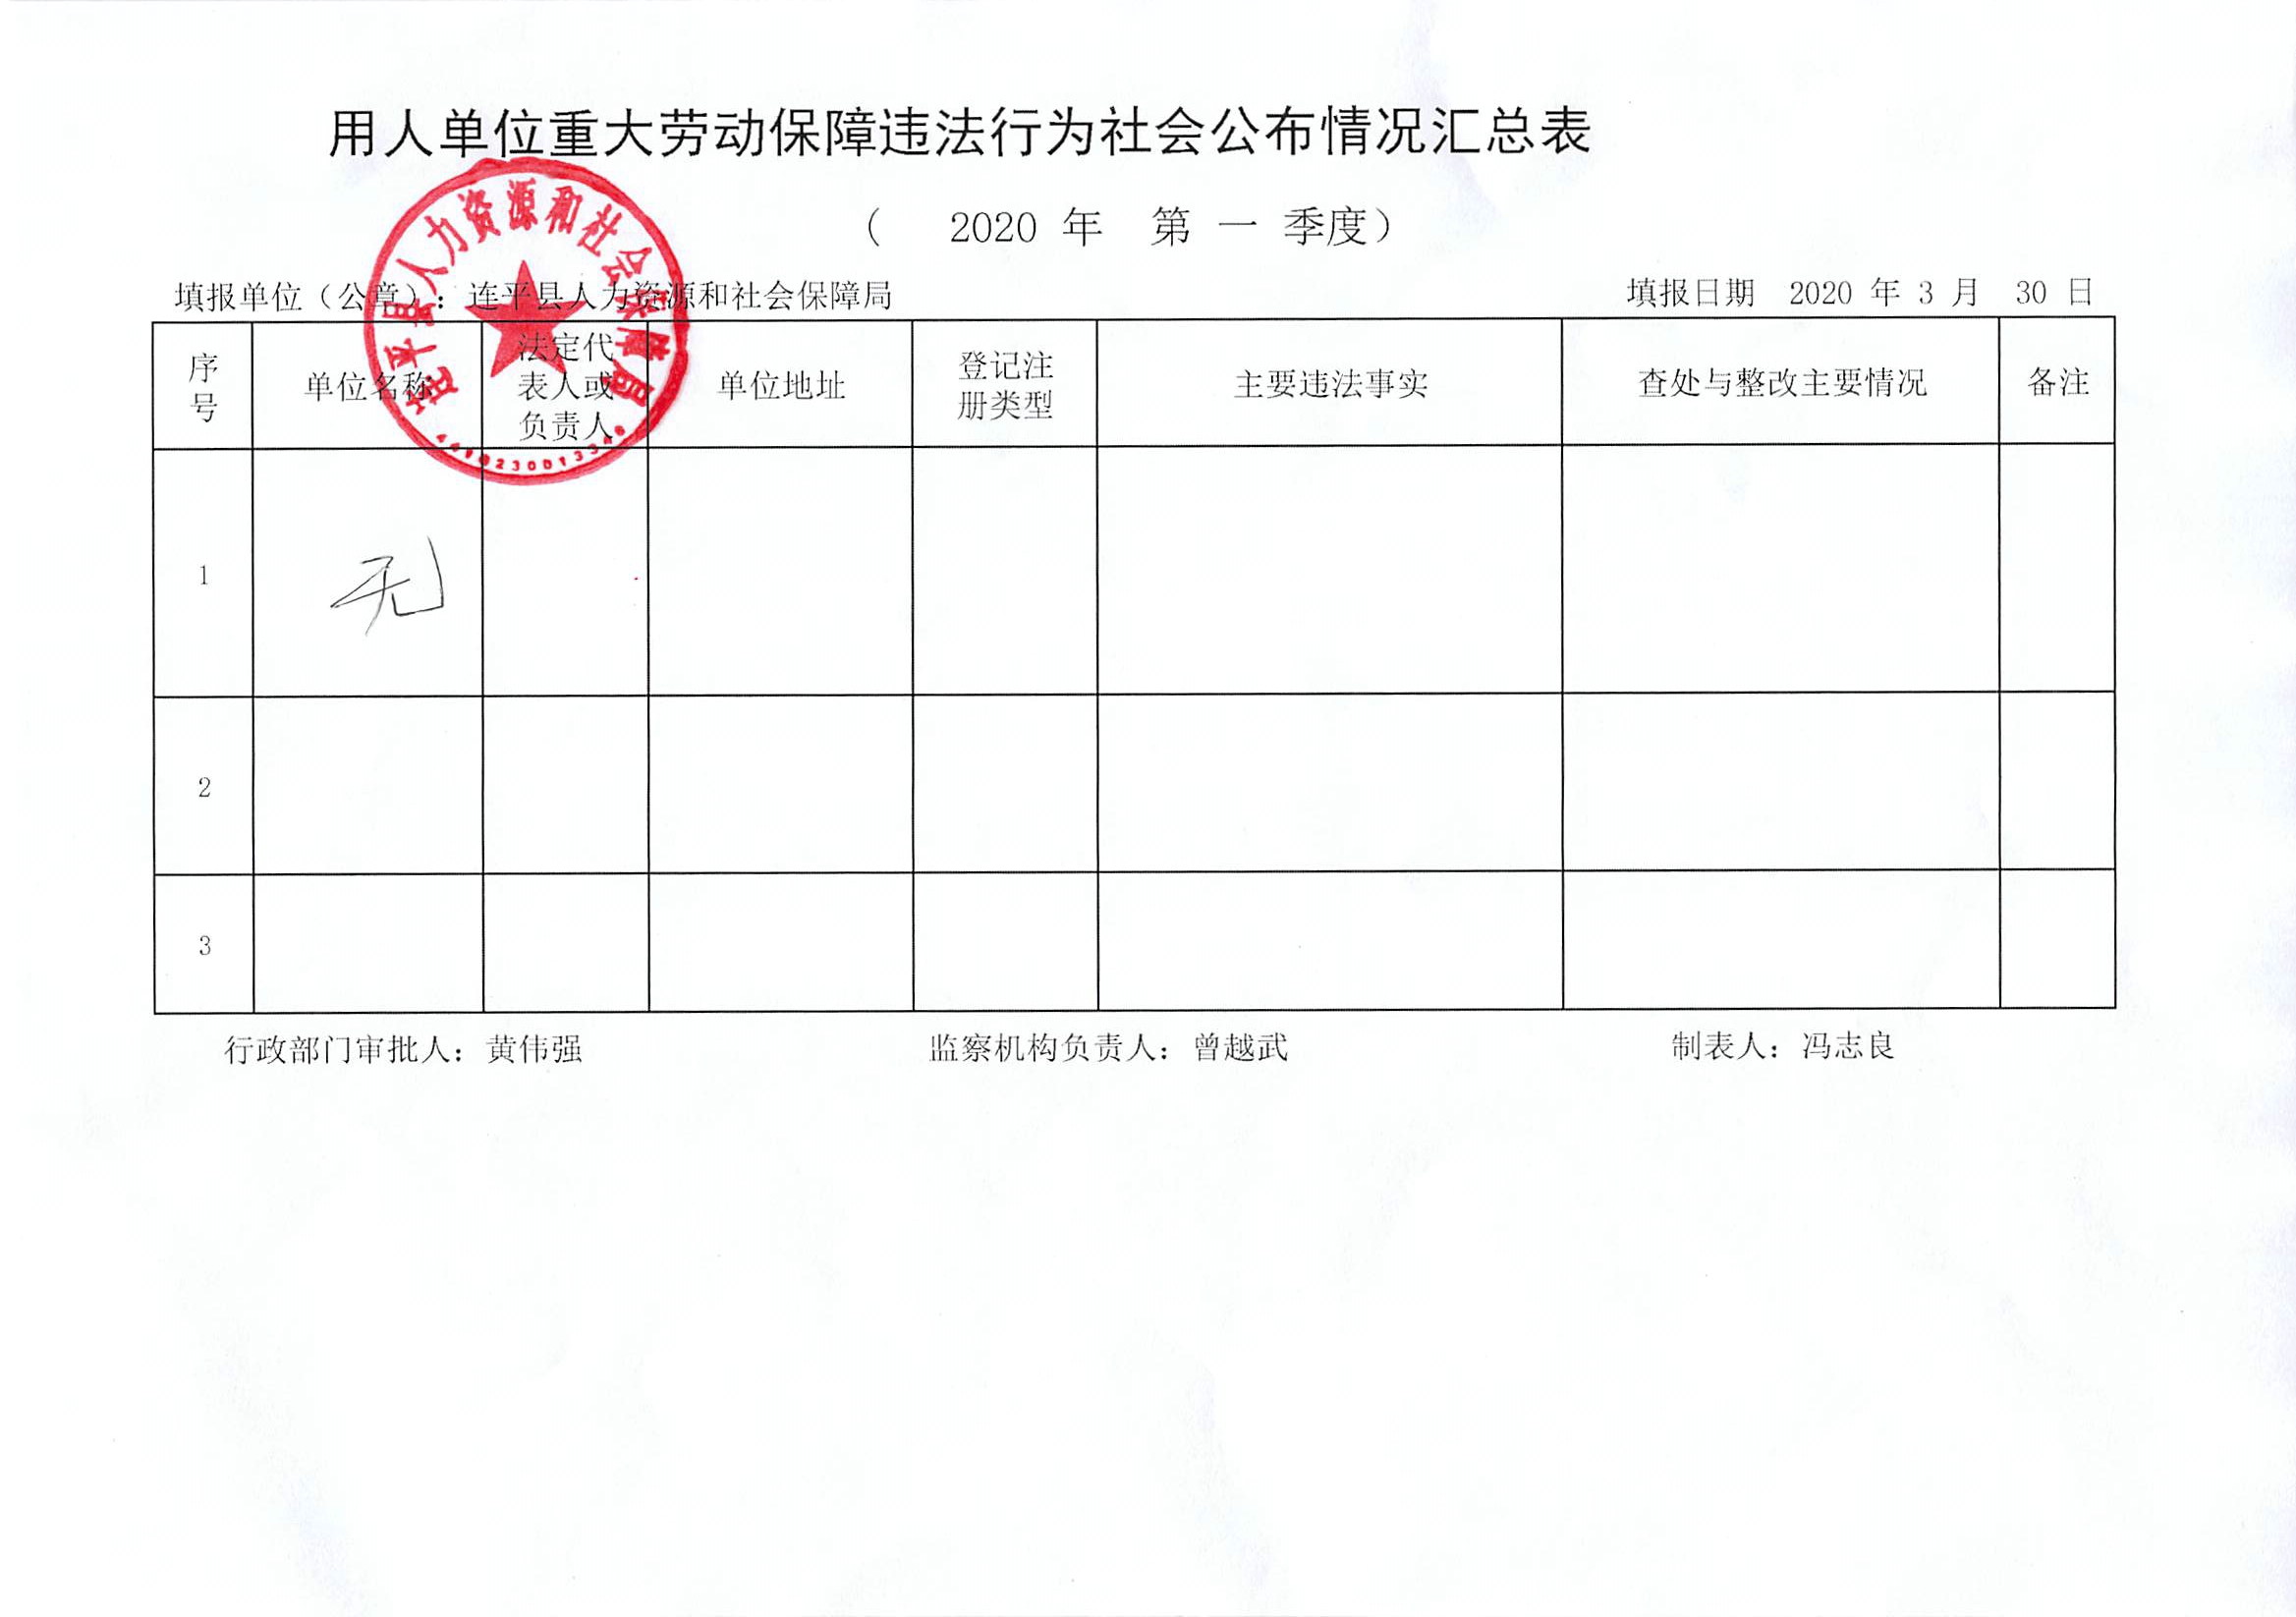 连平县用人单位重大劳动保障违法行为社会公布信息表（第一季度）.jpg